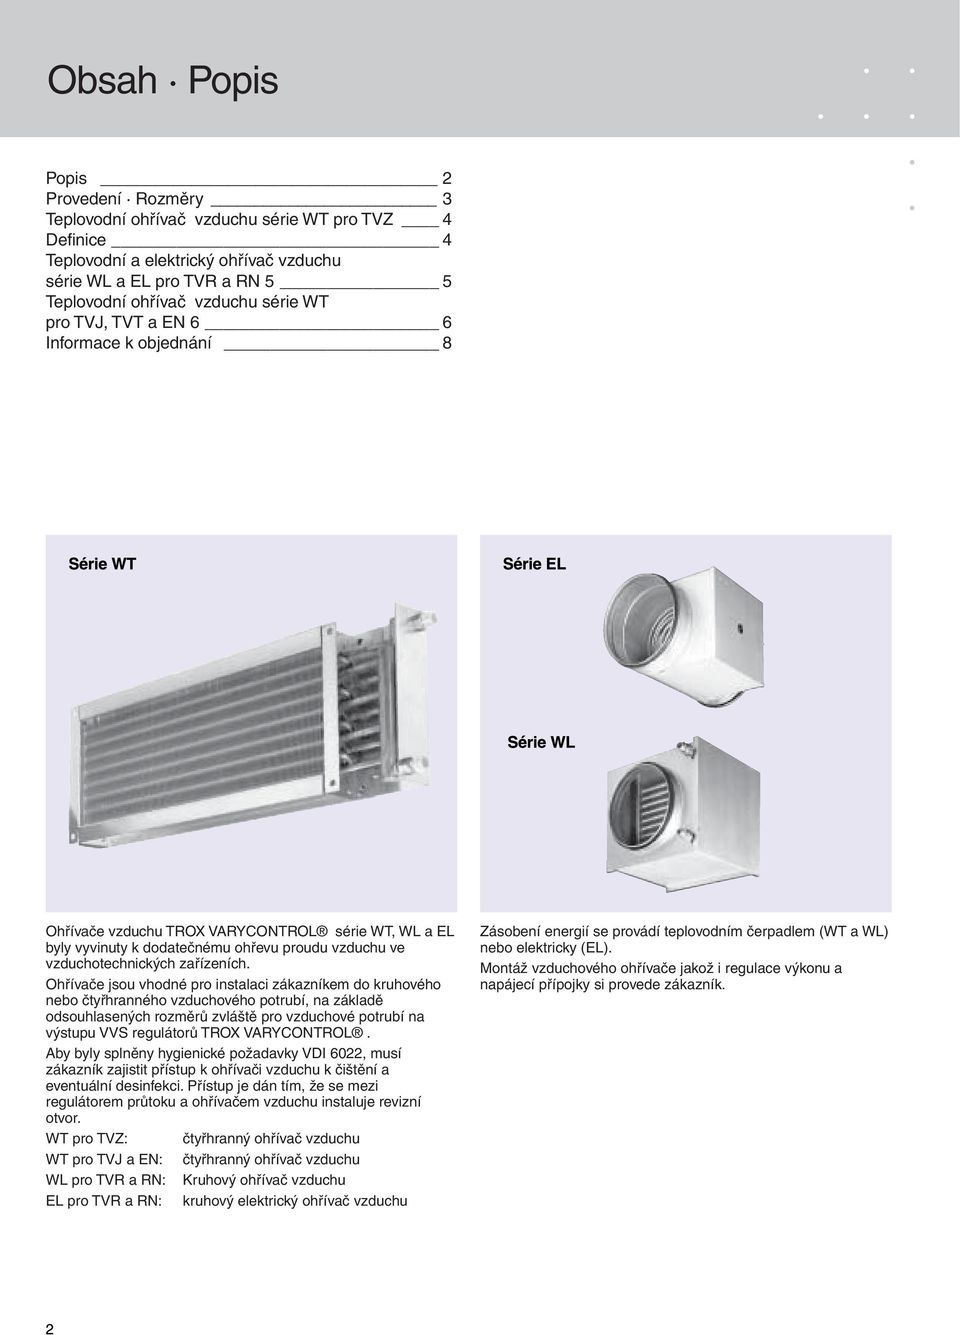 Ohřívače jsou vhodné pro instalaci zákazníkem do kruhového nebo čtyřhranného vzduchového potrubí, na základě odsouhlasených rozměrů zvláště pro vzduchové potrubí na výstupu VVS regulátorů TROX